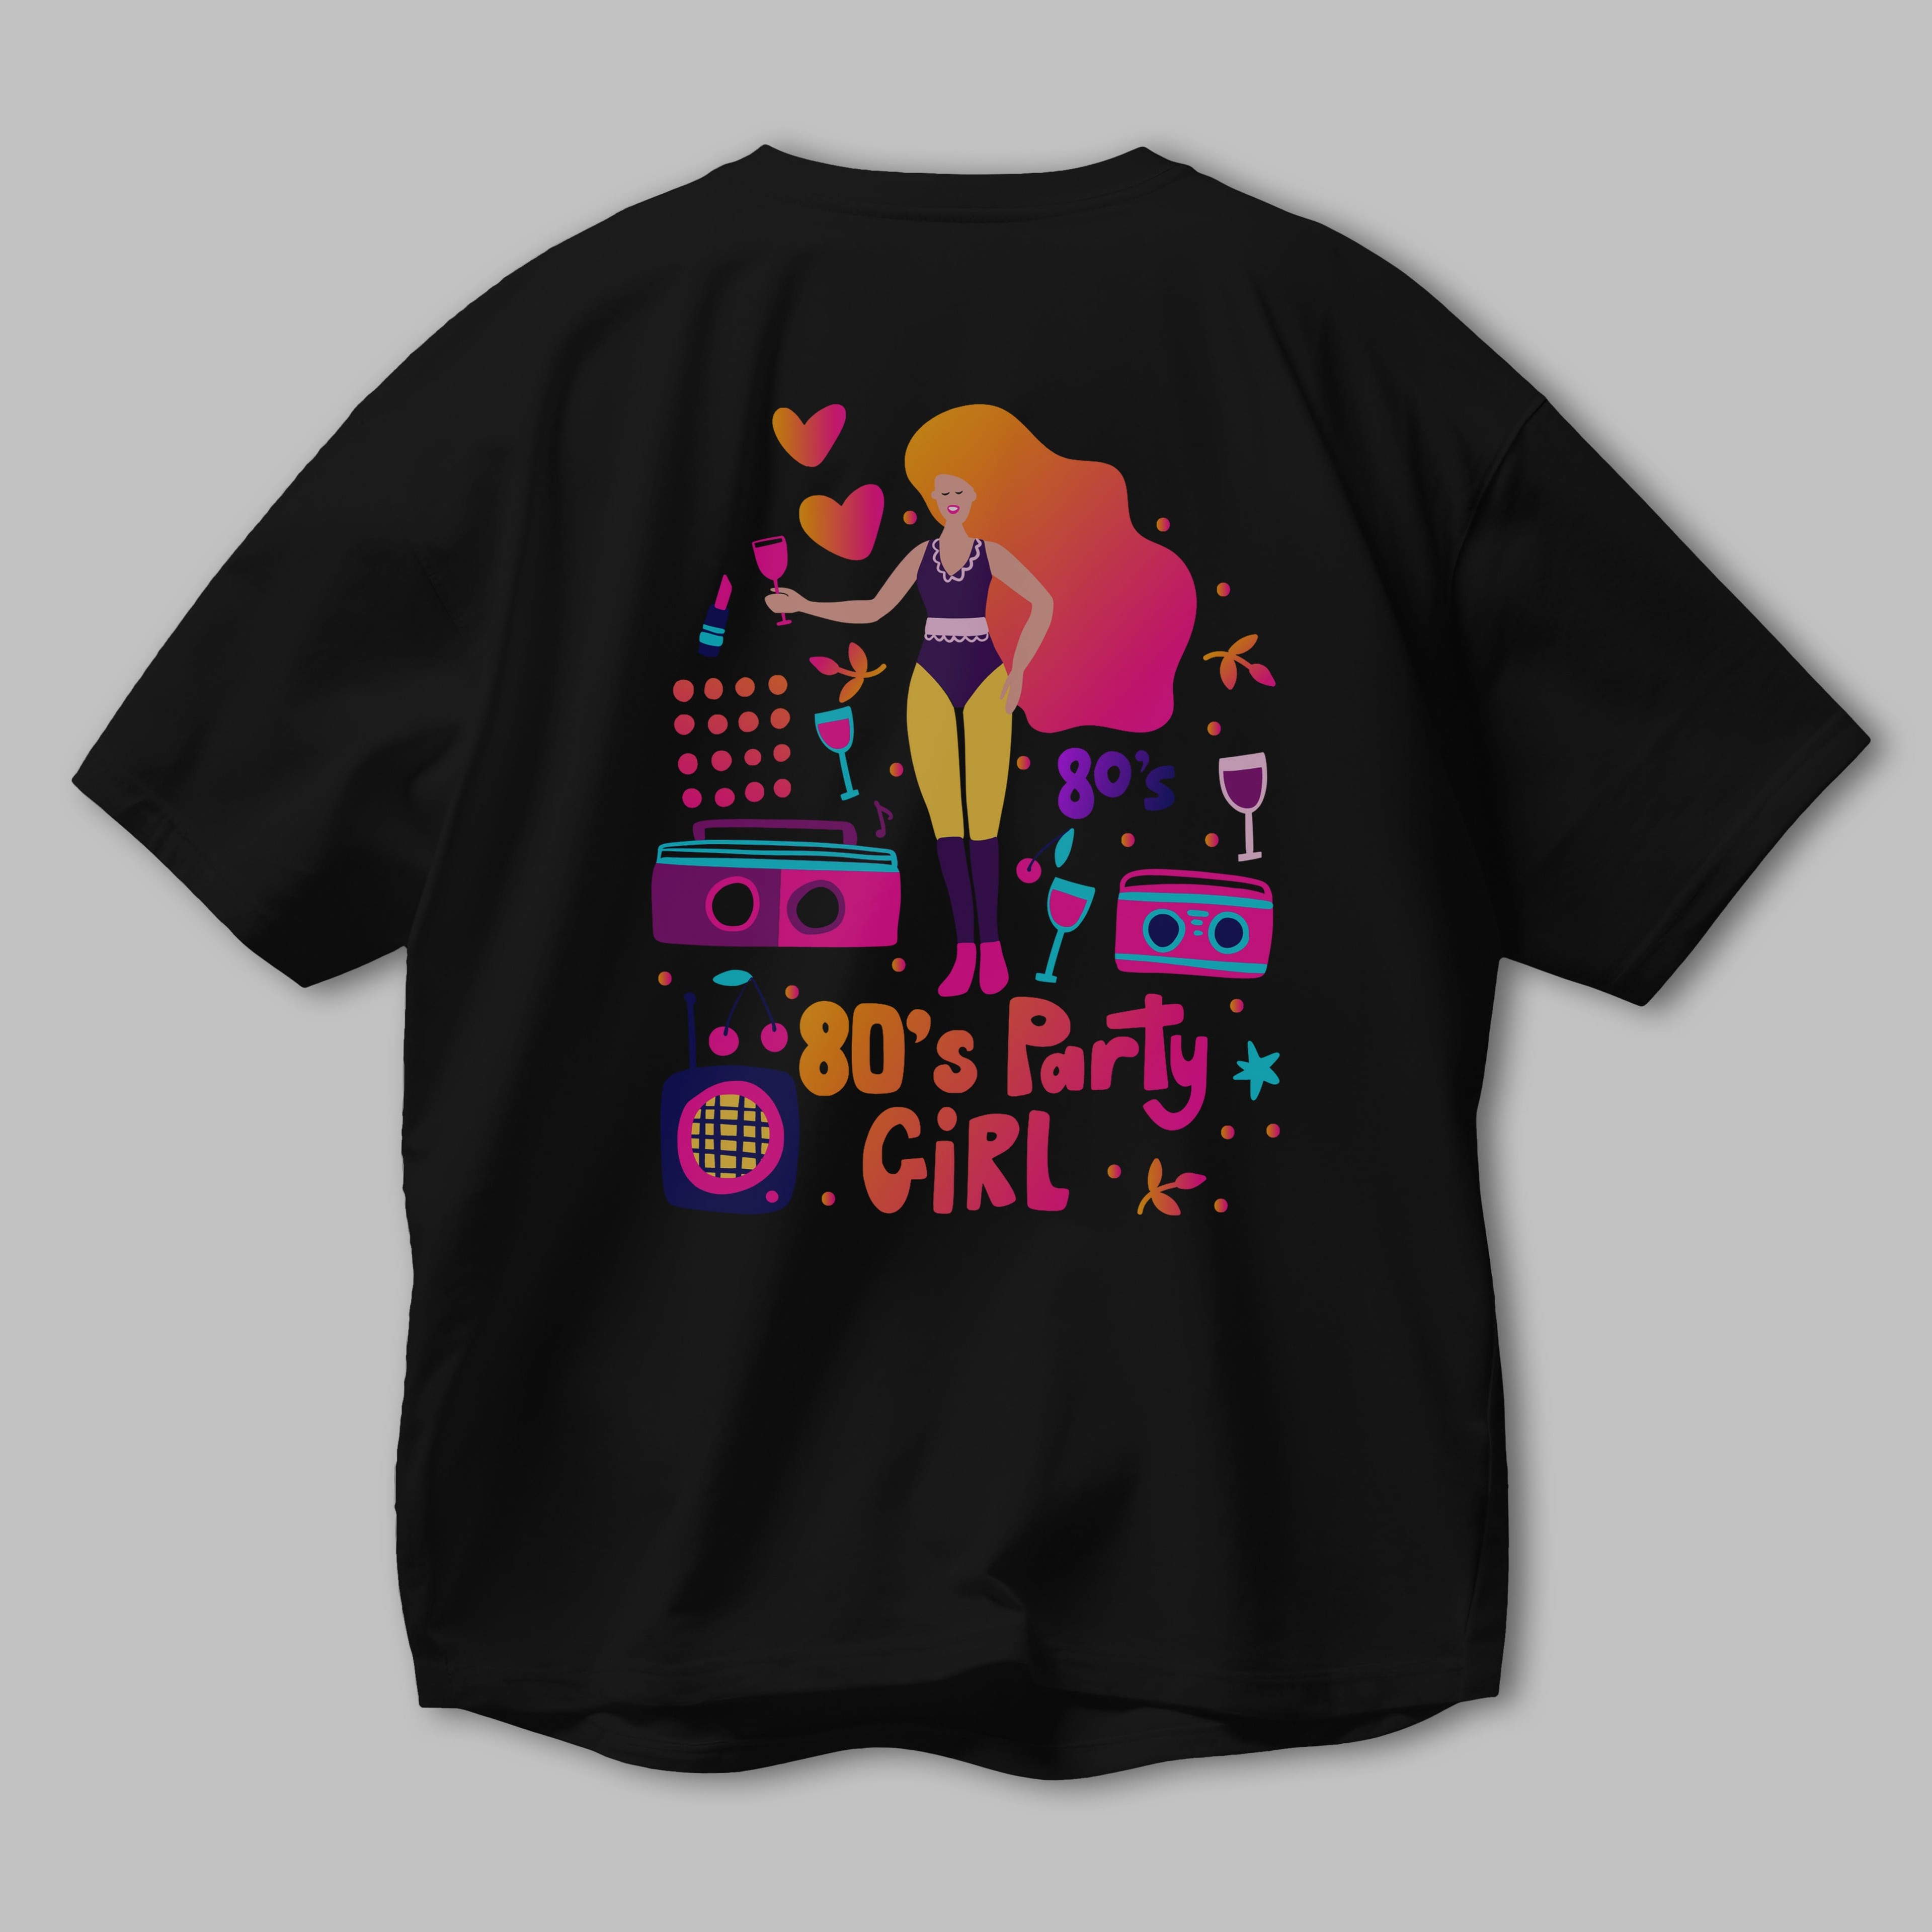 Retro Girl Party Arka Baskılı Oversize t-shirt Erkek Kadın Unisex